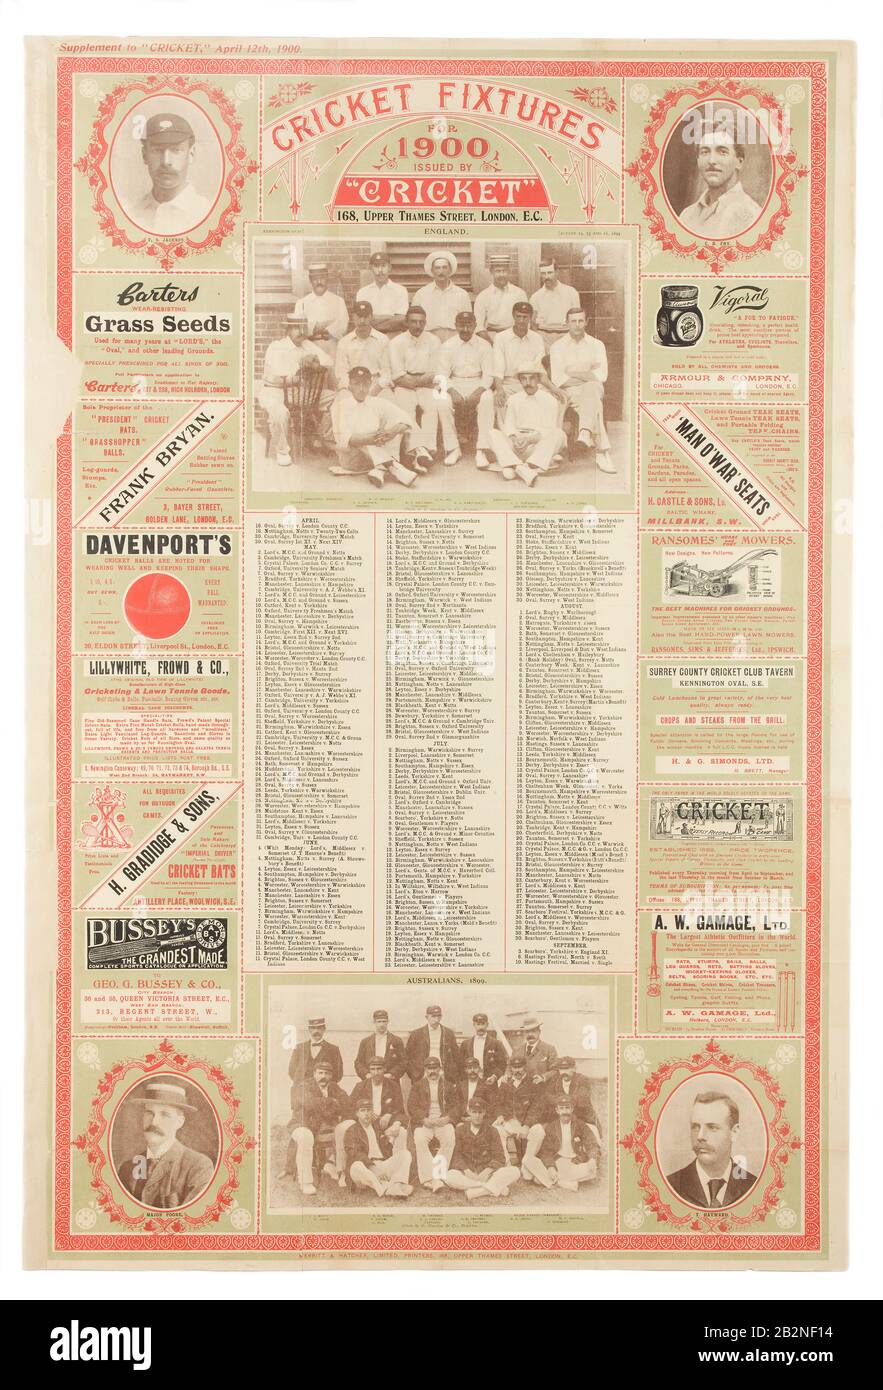 1900 Cartel de accesorios de cricket Foto de stock